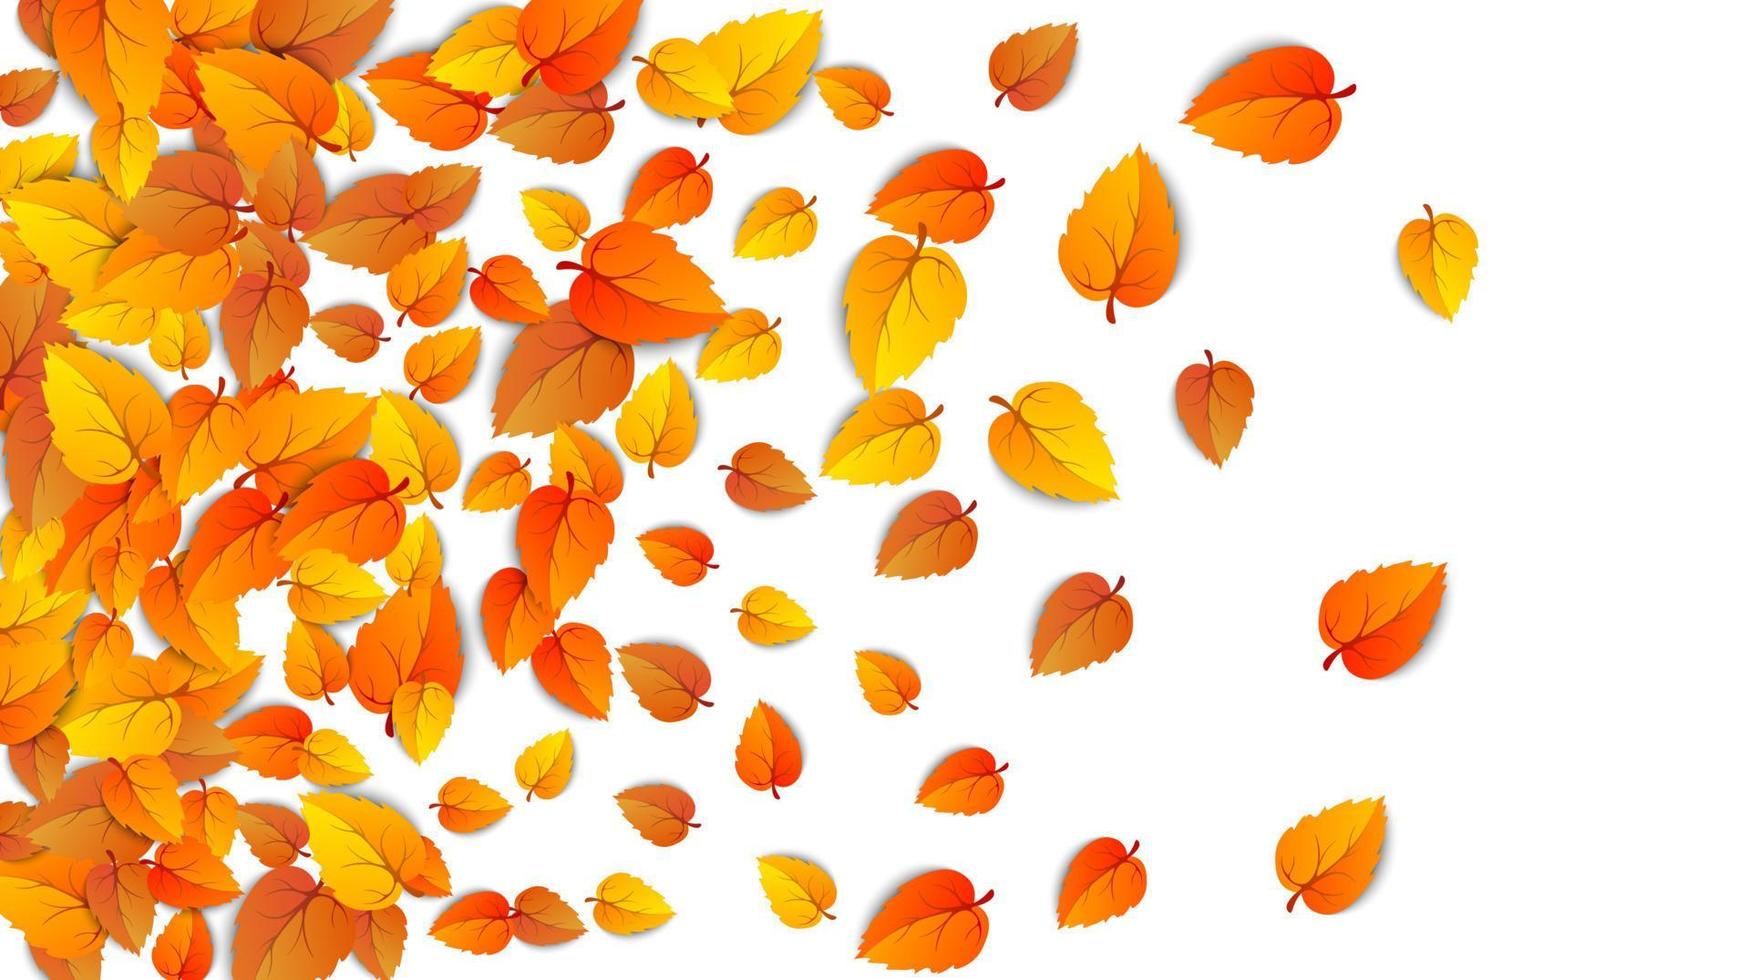 plantilla de marco de hoja dorada de otoño. árbol caído hojas de otoño aislado en blanco. follaje amarillo de octubre y follaje natural otoñal. fondo horizontal de la hoja de la caída del oro del otoño de la publicidad. vector